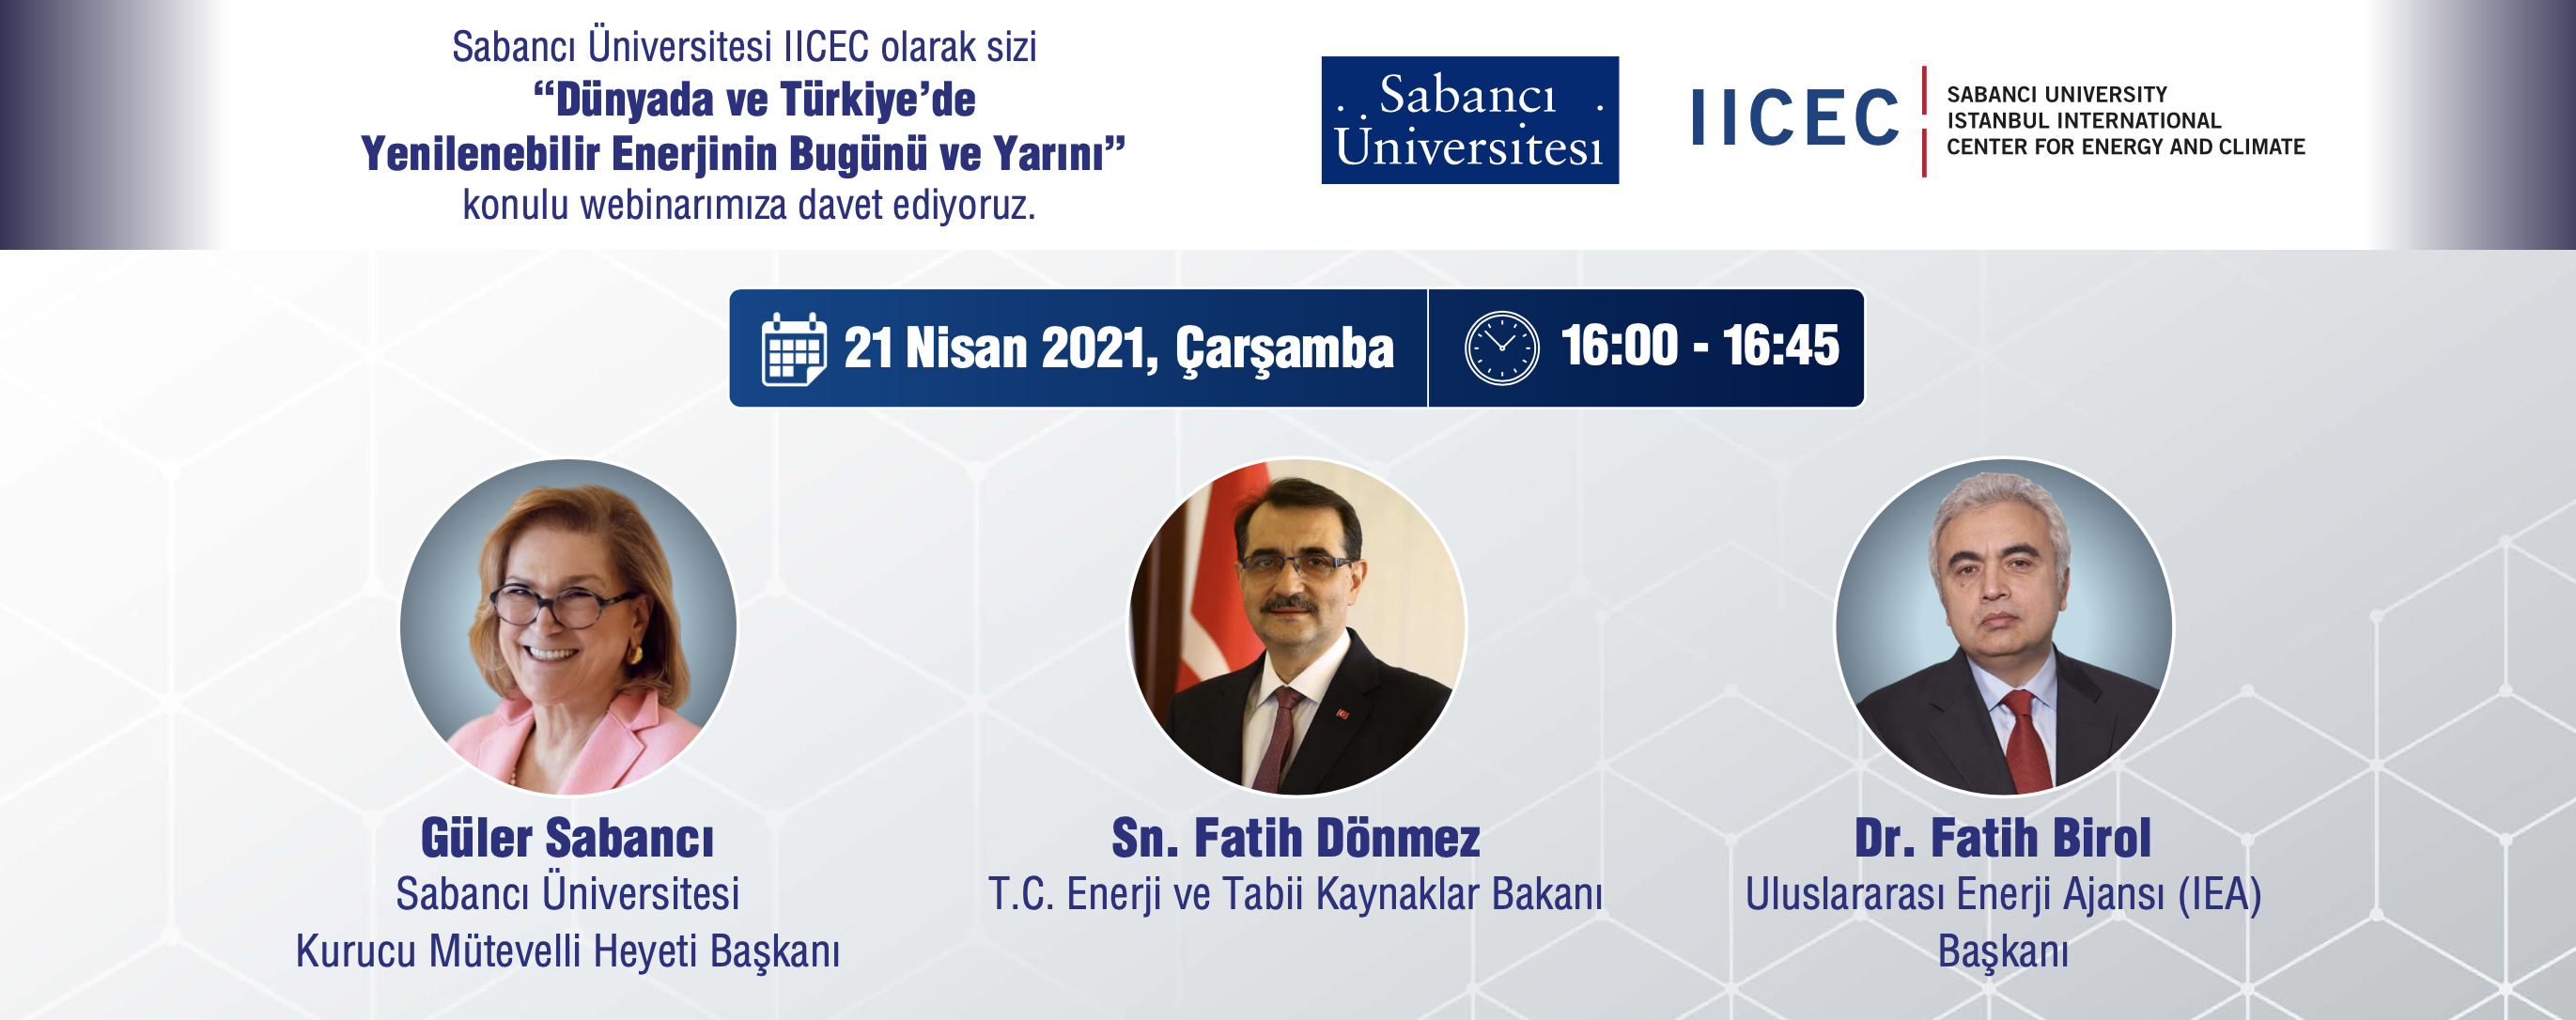 IICEC “Dünyada ve Türkiye’de Yenilenebilir Enerjinin Bugünü ve Yarını” webinarını gerçekleştirecek